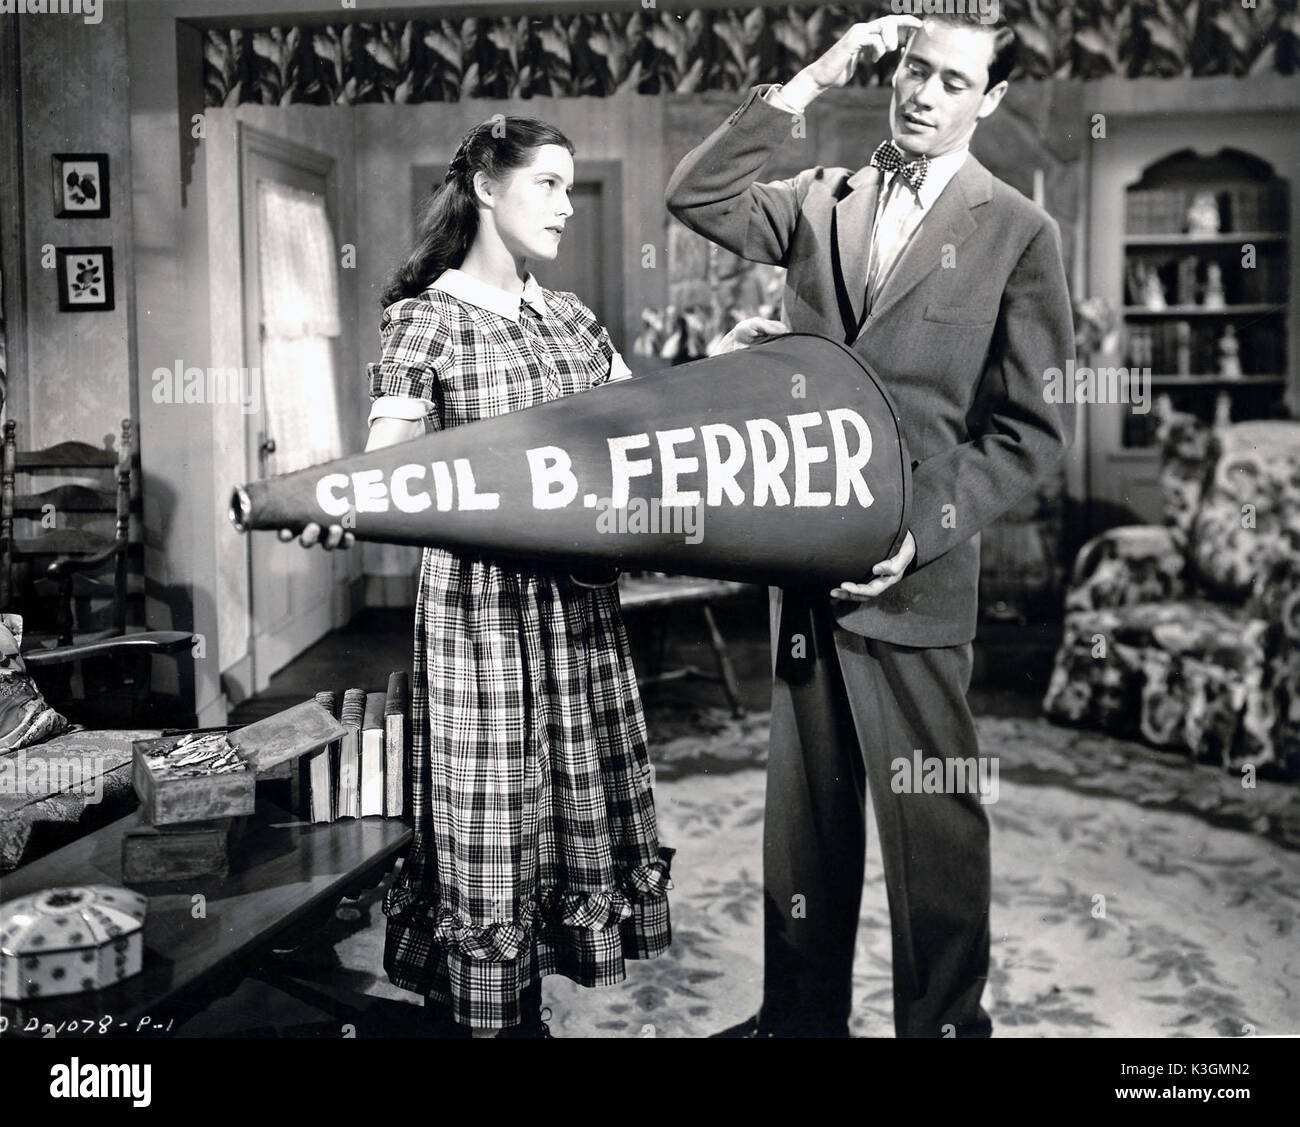 Mädchen DES LIMBERLOST Hauptdarstellerin DORINDA CLIFTON quält MEL FERRER, als Schauspieler bekannt, am Set seines ersten Regie Zuordnung durch den Vergleich mit dem legendären Hollywood-regisseur Cecil B DeMille GIRL DES LIMBERLOST Datum: 1945 Stockfoto